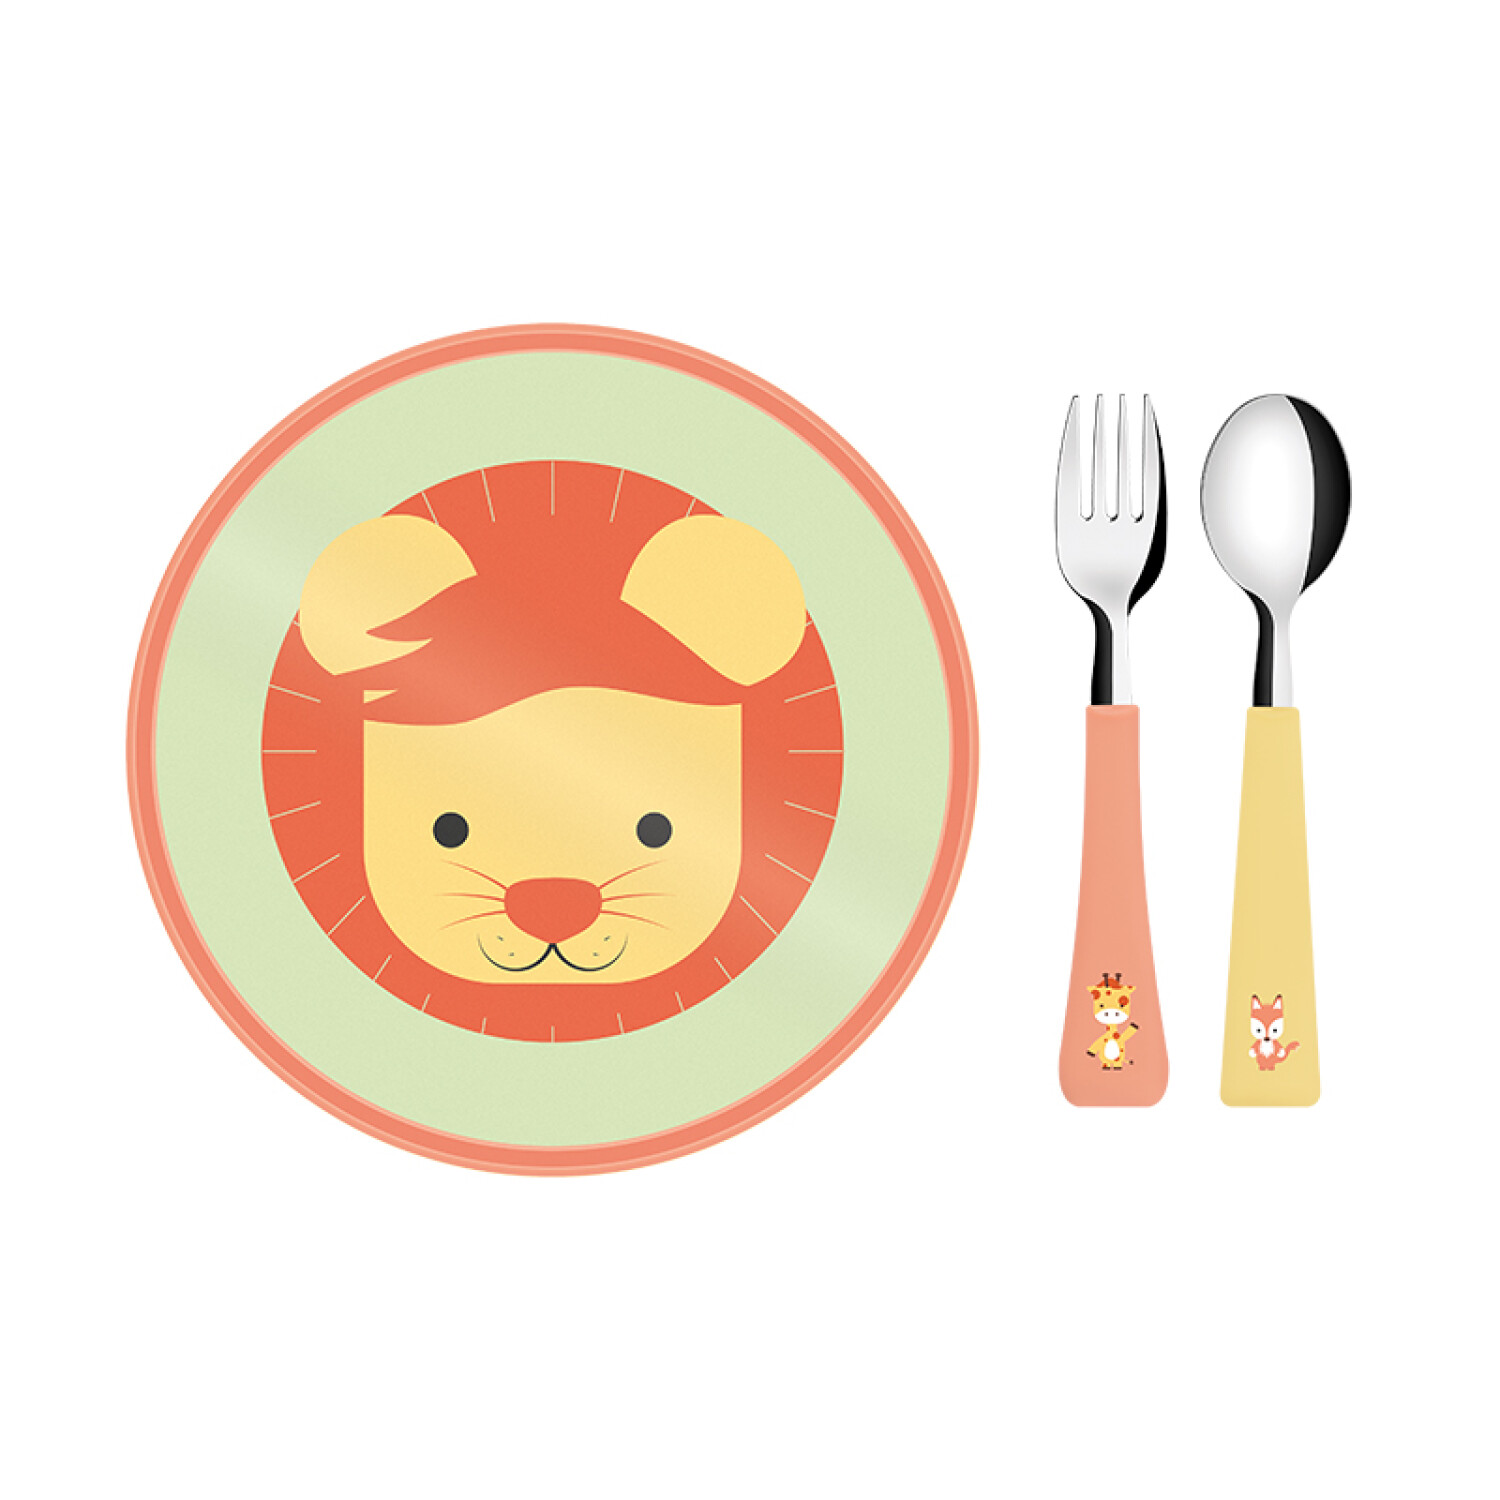 Comprar Juego tenedor y cuchara para bebé Online - Caja de Lola